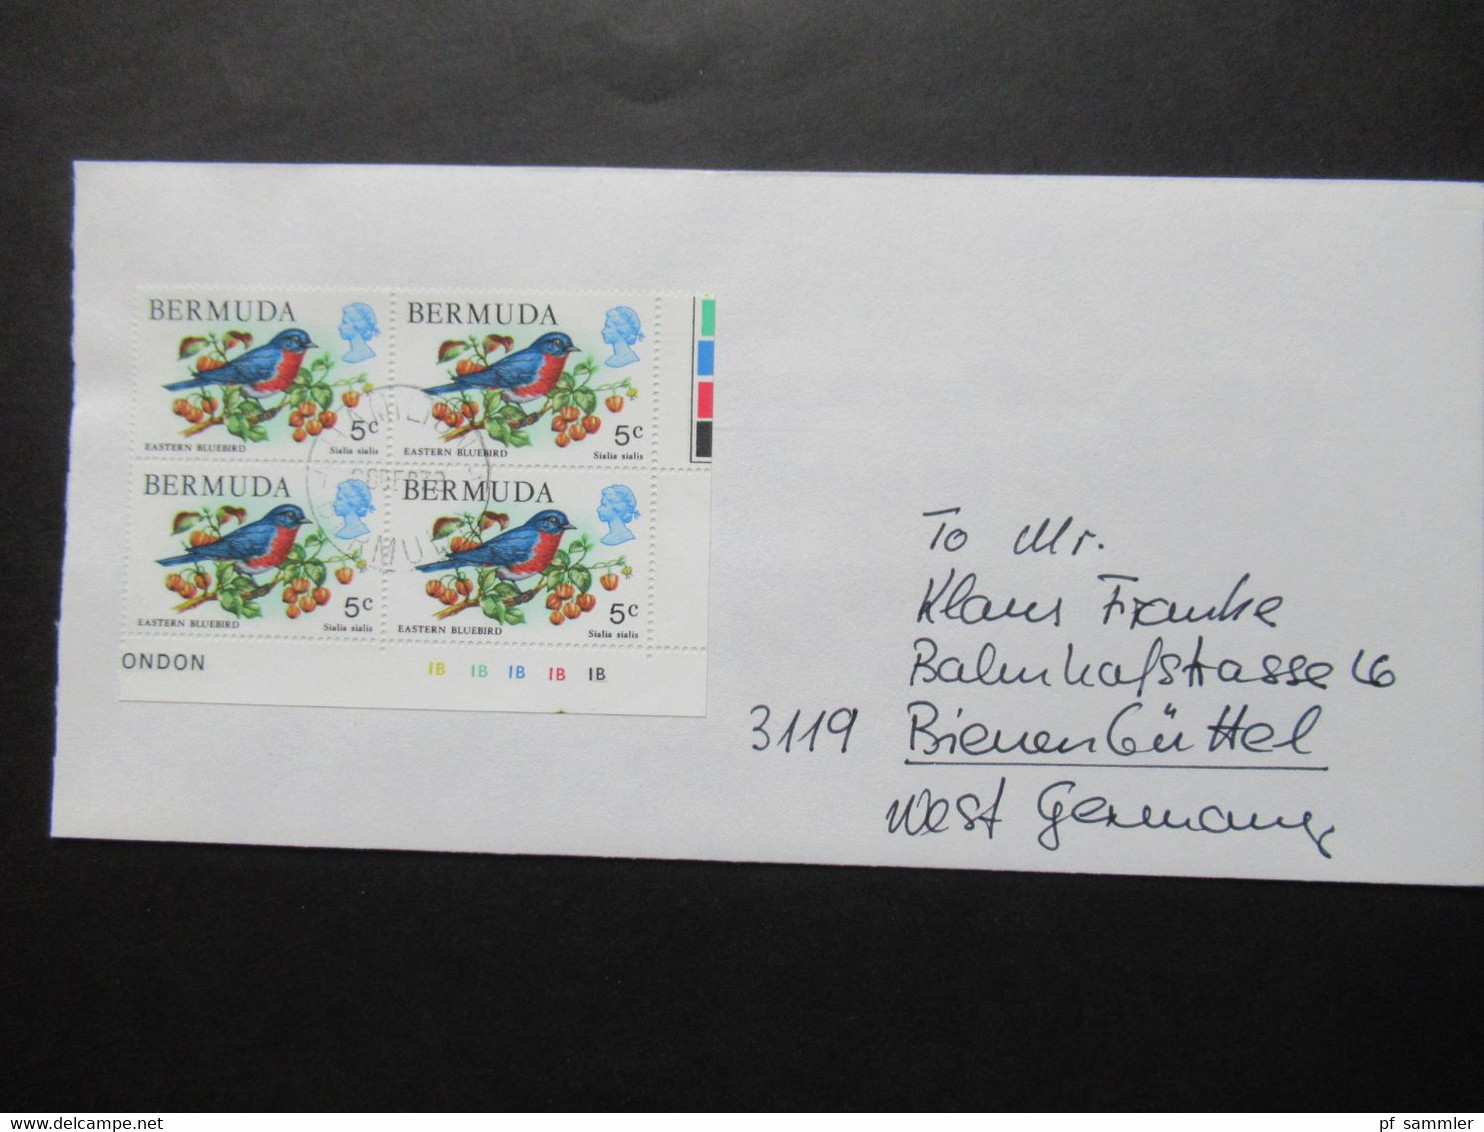 Bermuda 1978 Vögel u. Amphibien / Blumen / Segelschiffe Motivmarken als 4er Blocks Randstücke auch Dollar Werte!!